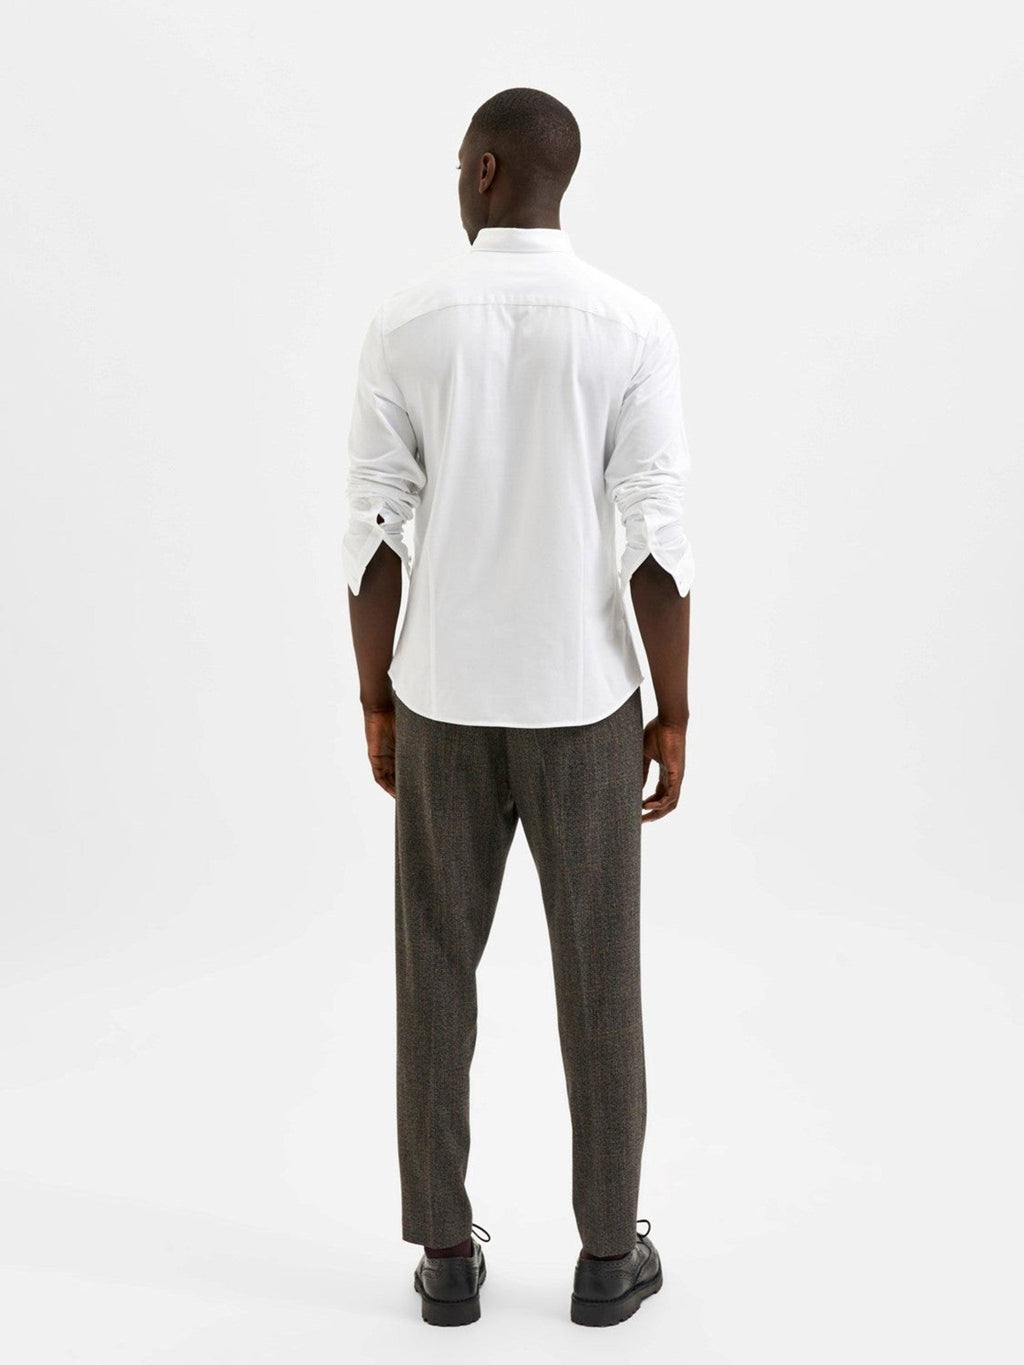 Charles Slim Shirt - White